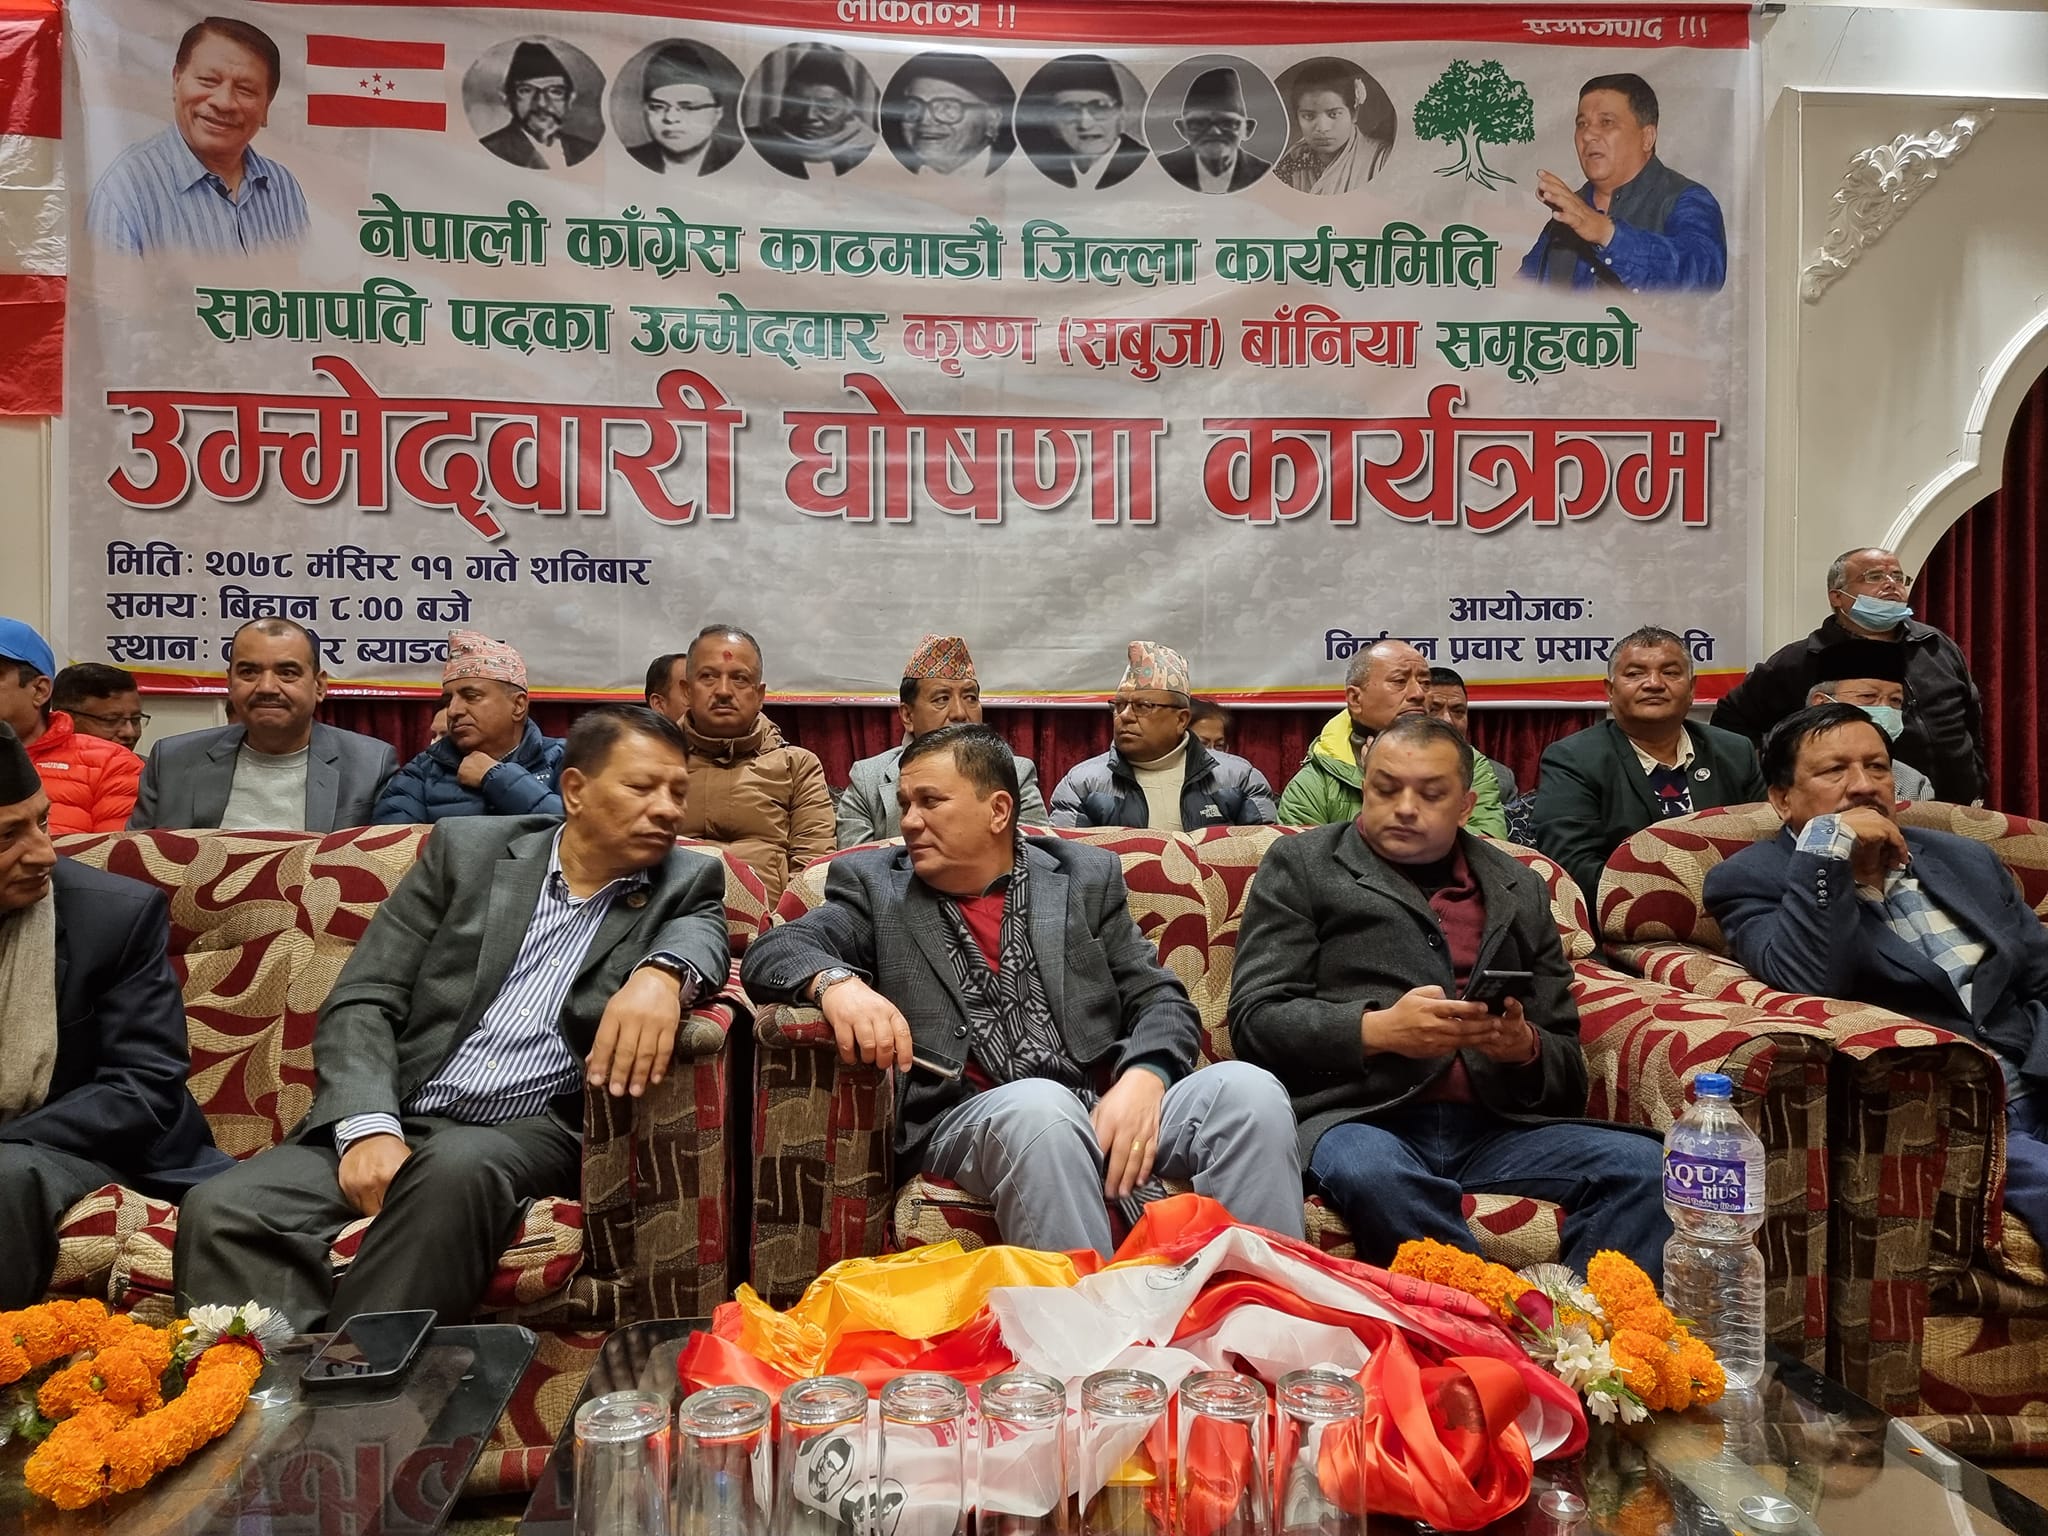 काठमाडौं कांग्रेसको सभापतिमा बानियाँ र कार्कीबीच दोस्रोपटक प्रतिस्पर्धा